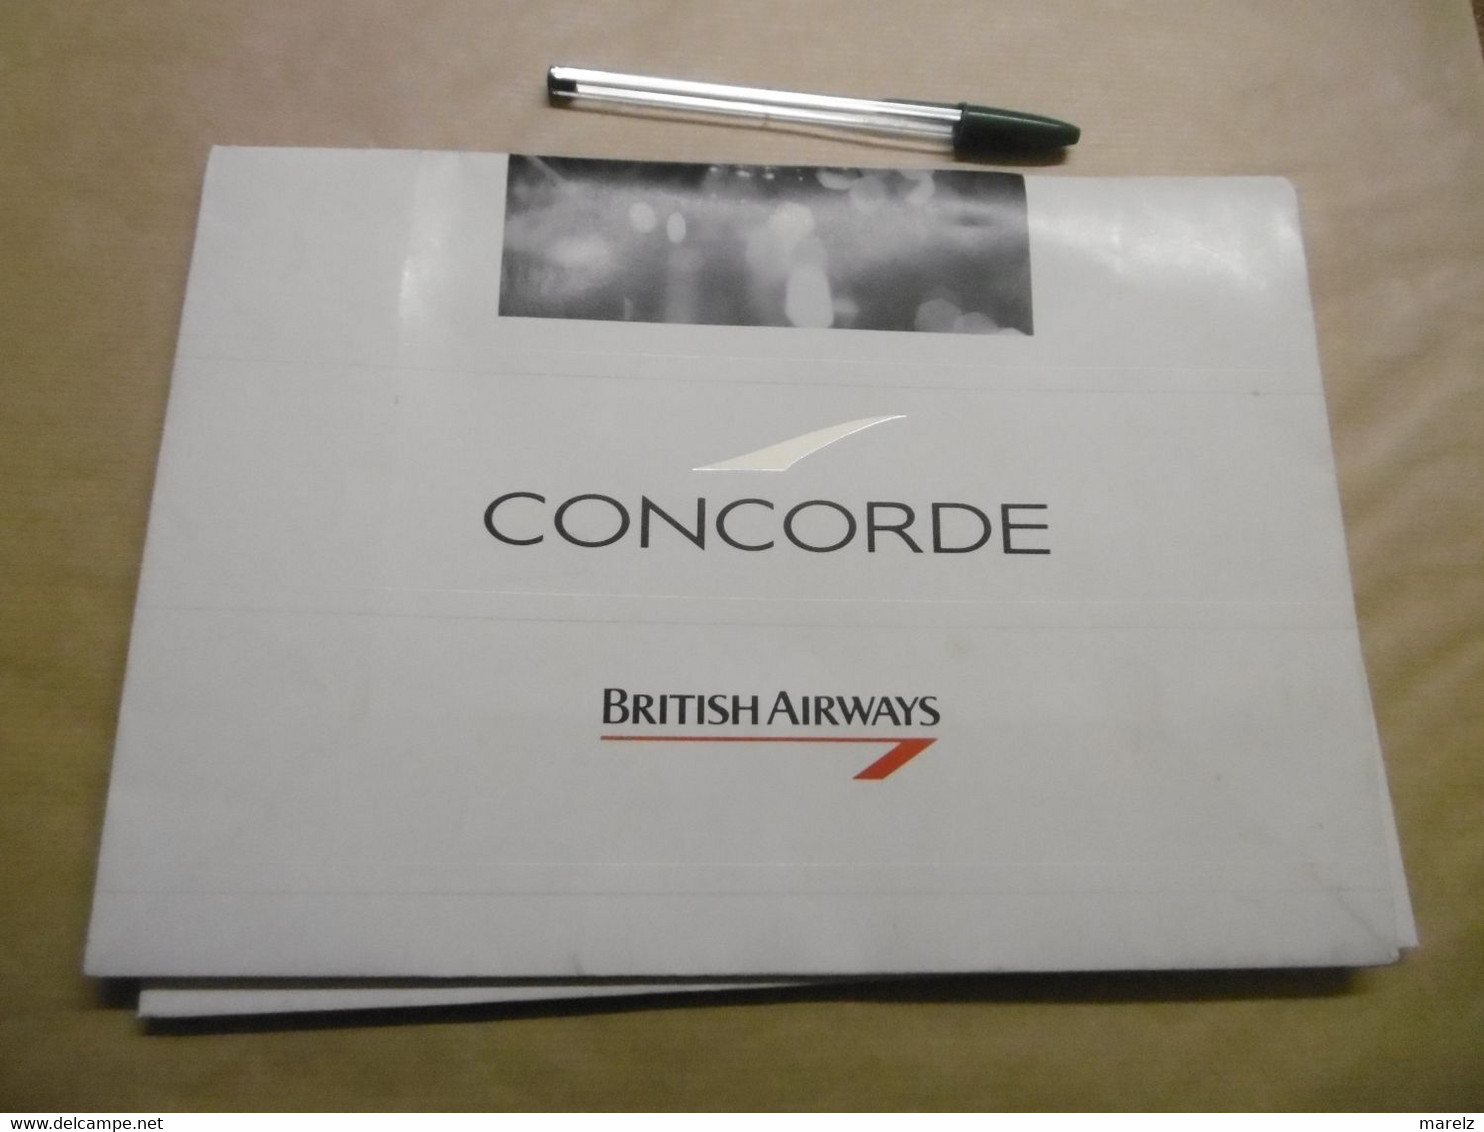 CONCORDE BRITISH AIRWAYS - Pochette Sac Papier Publicitaire KEENPACK - Publicité Cie Aérienne British Airways CONCORDE - Publicités